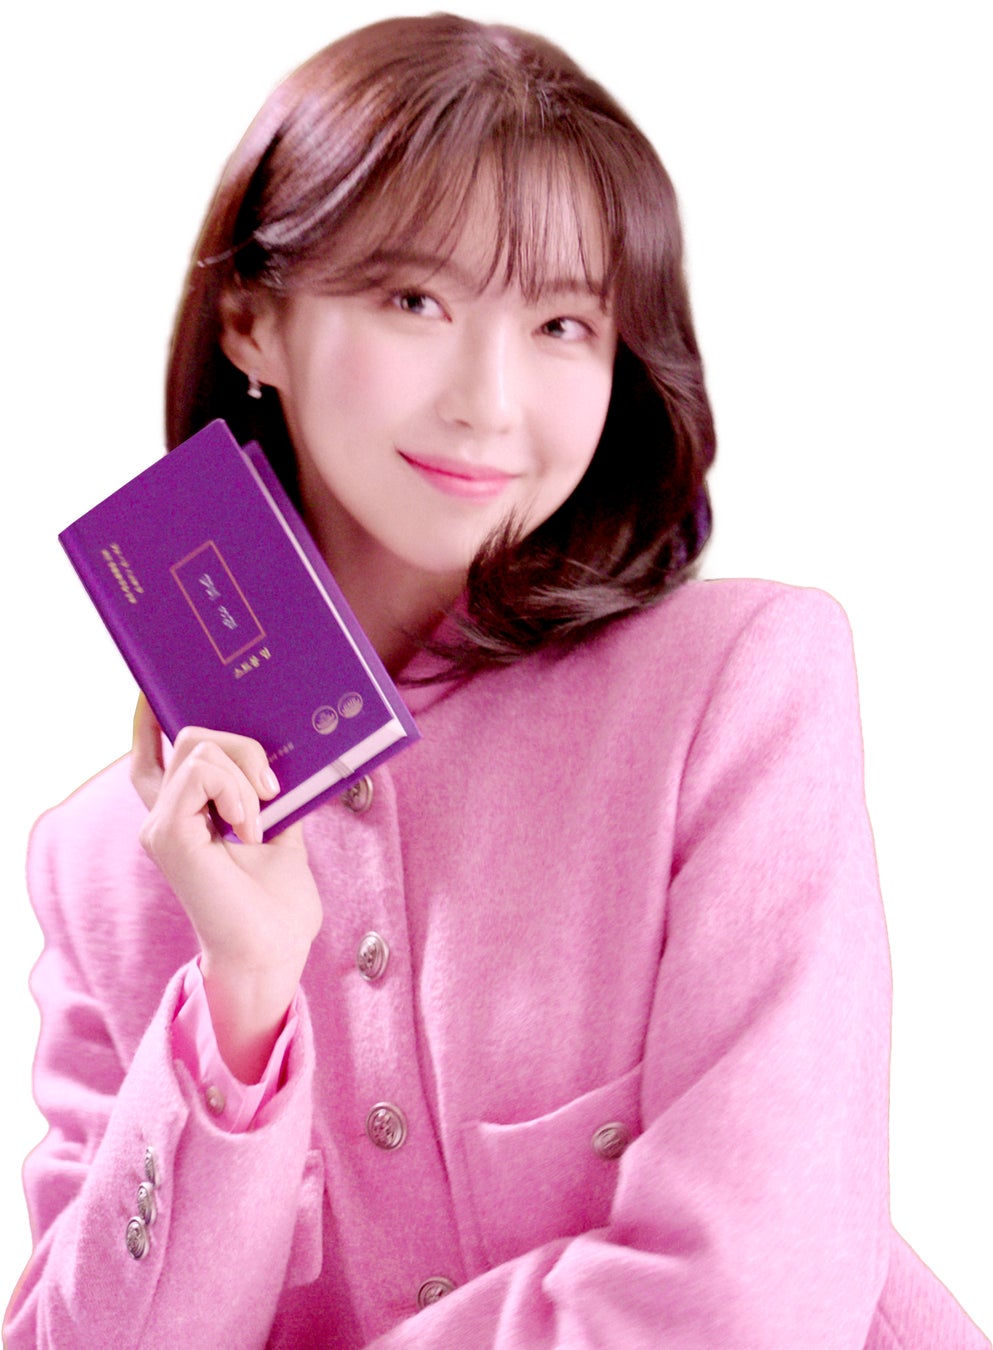 韓国発パーソナルケアブランド「UNOVE」がSEVENTEEN MINGYUをグローバルアンバサダーに任命、「羨望の柔らかさと香りで「私」を解き放つ」キャンペーン後日公開